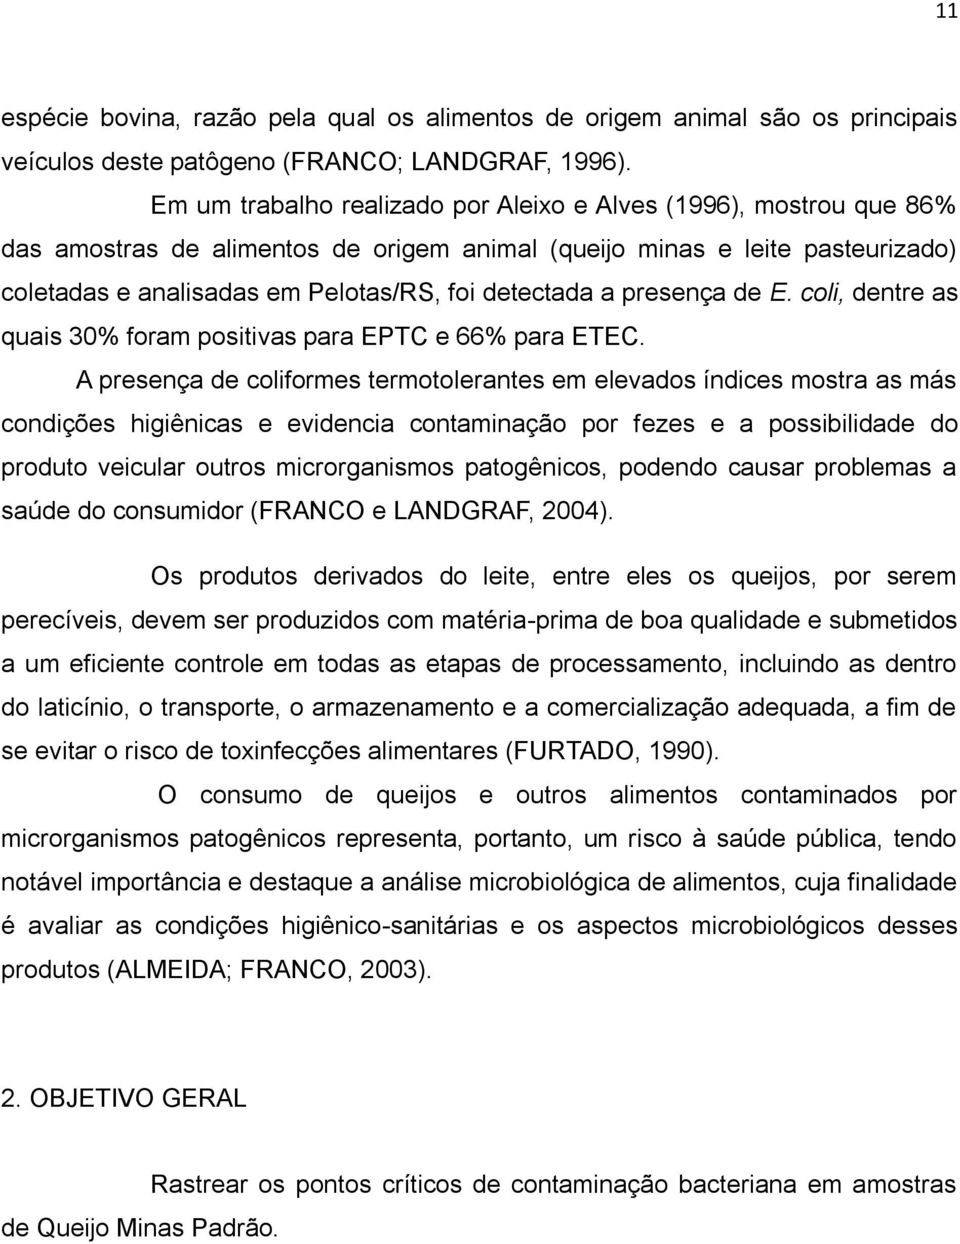 a presença de E. coli, dentre as quais 30% foram positivas para EPTC e 66% para ETEC.